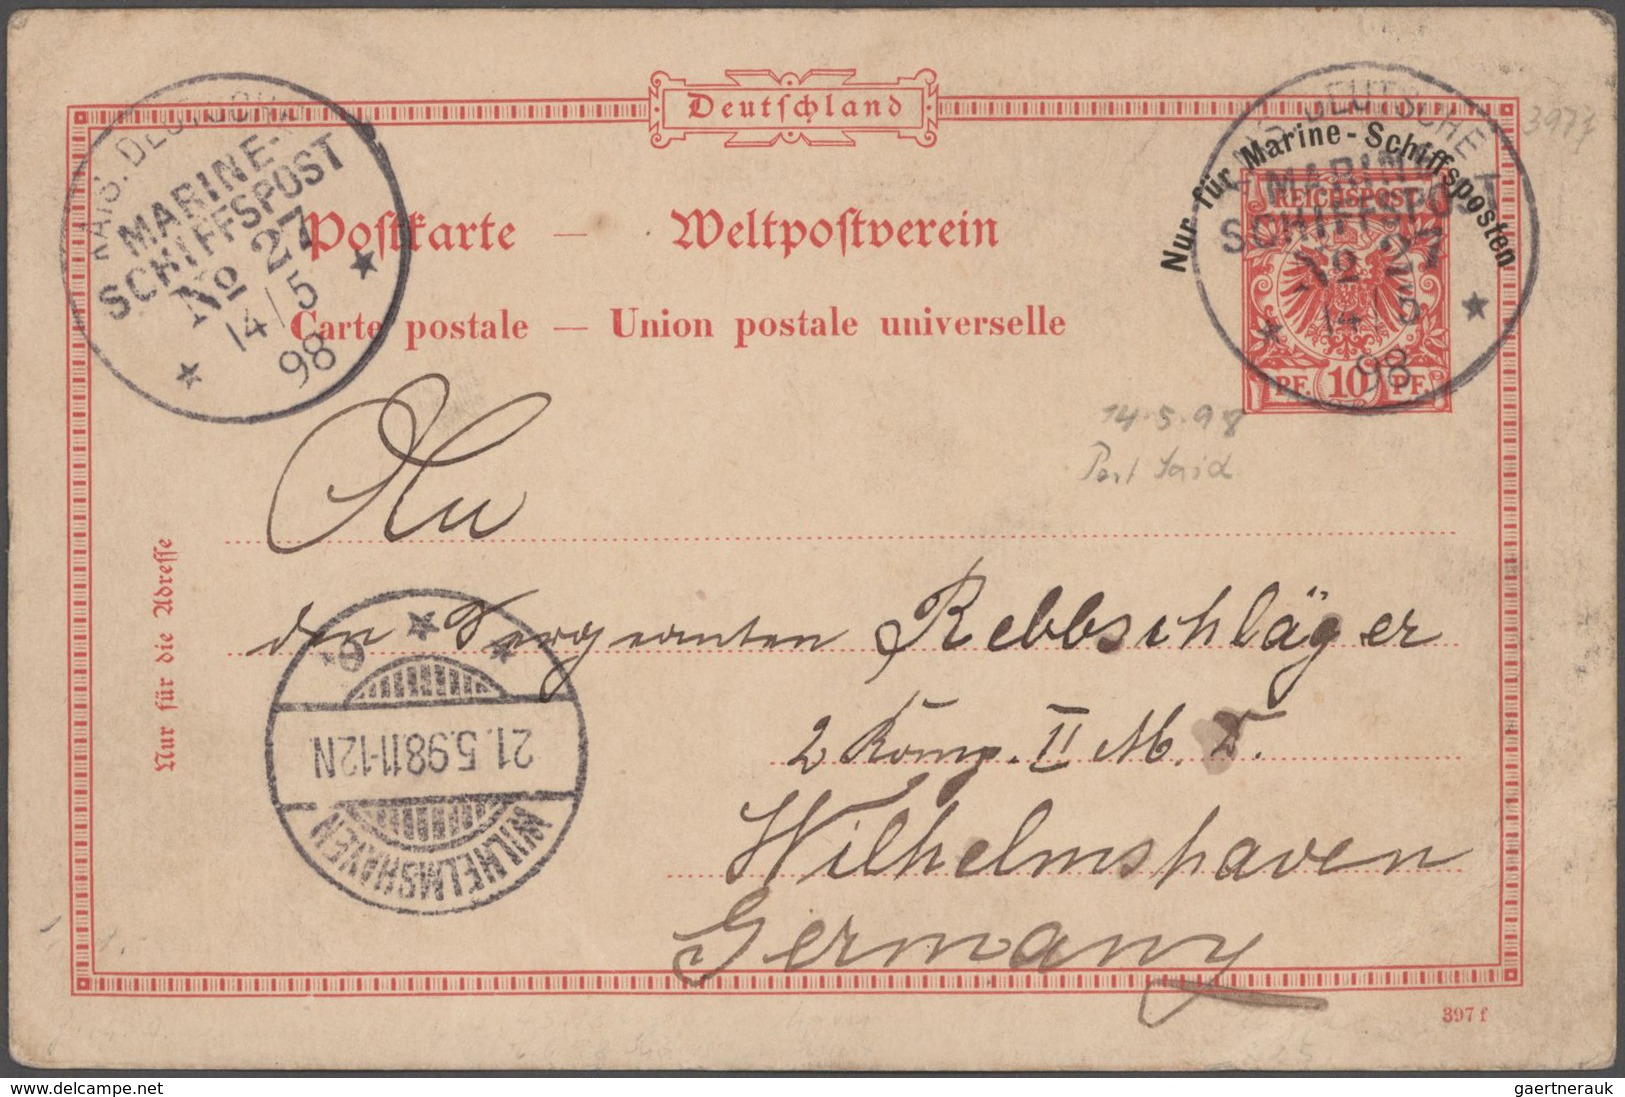 Deutsche Schiffspost - Marine: 1898, kleine Spezialsammlung von insgesamt 16 Belegen zum Thema "Mani